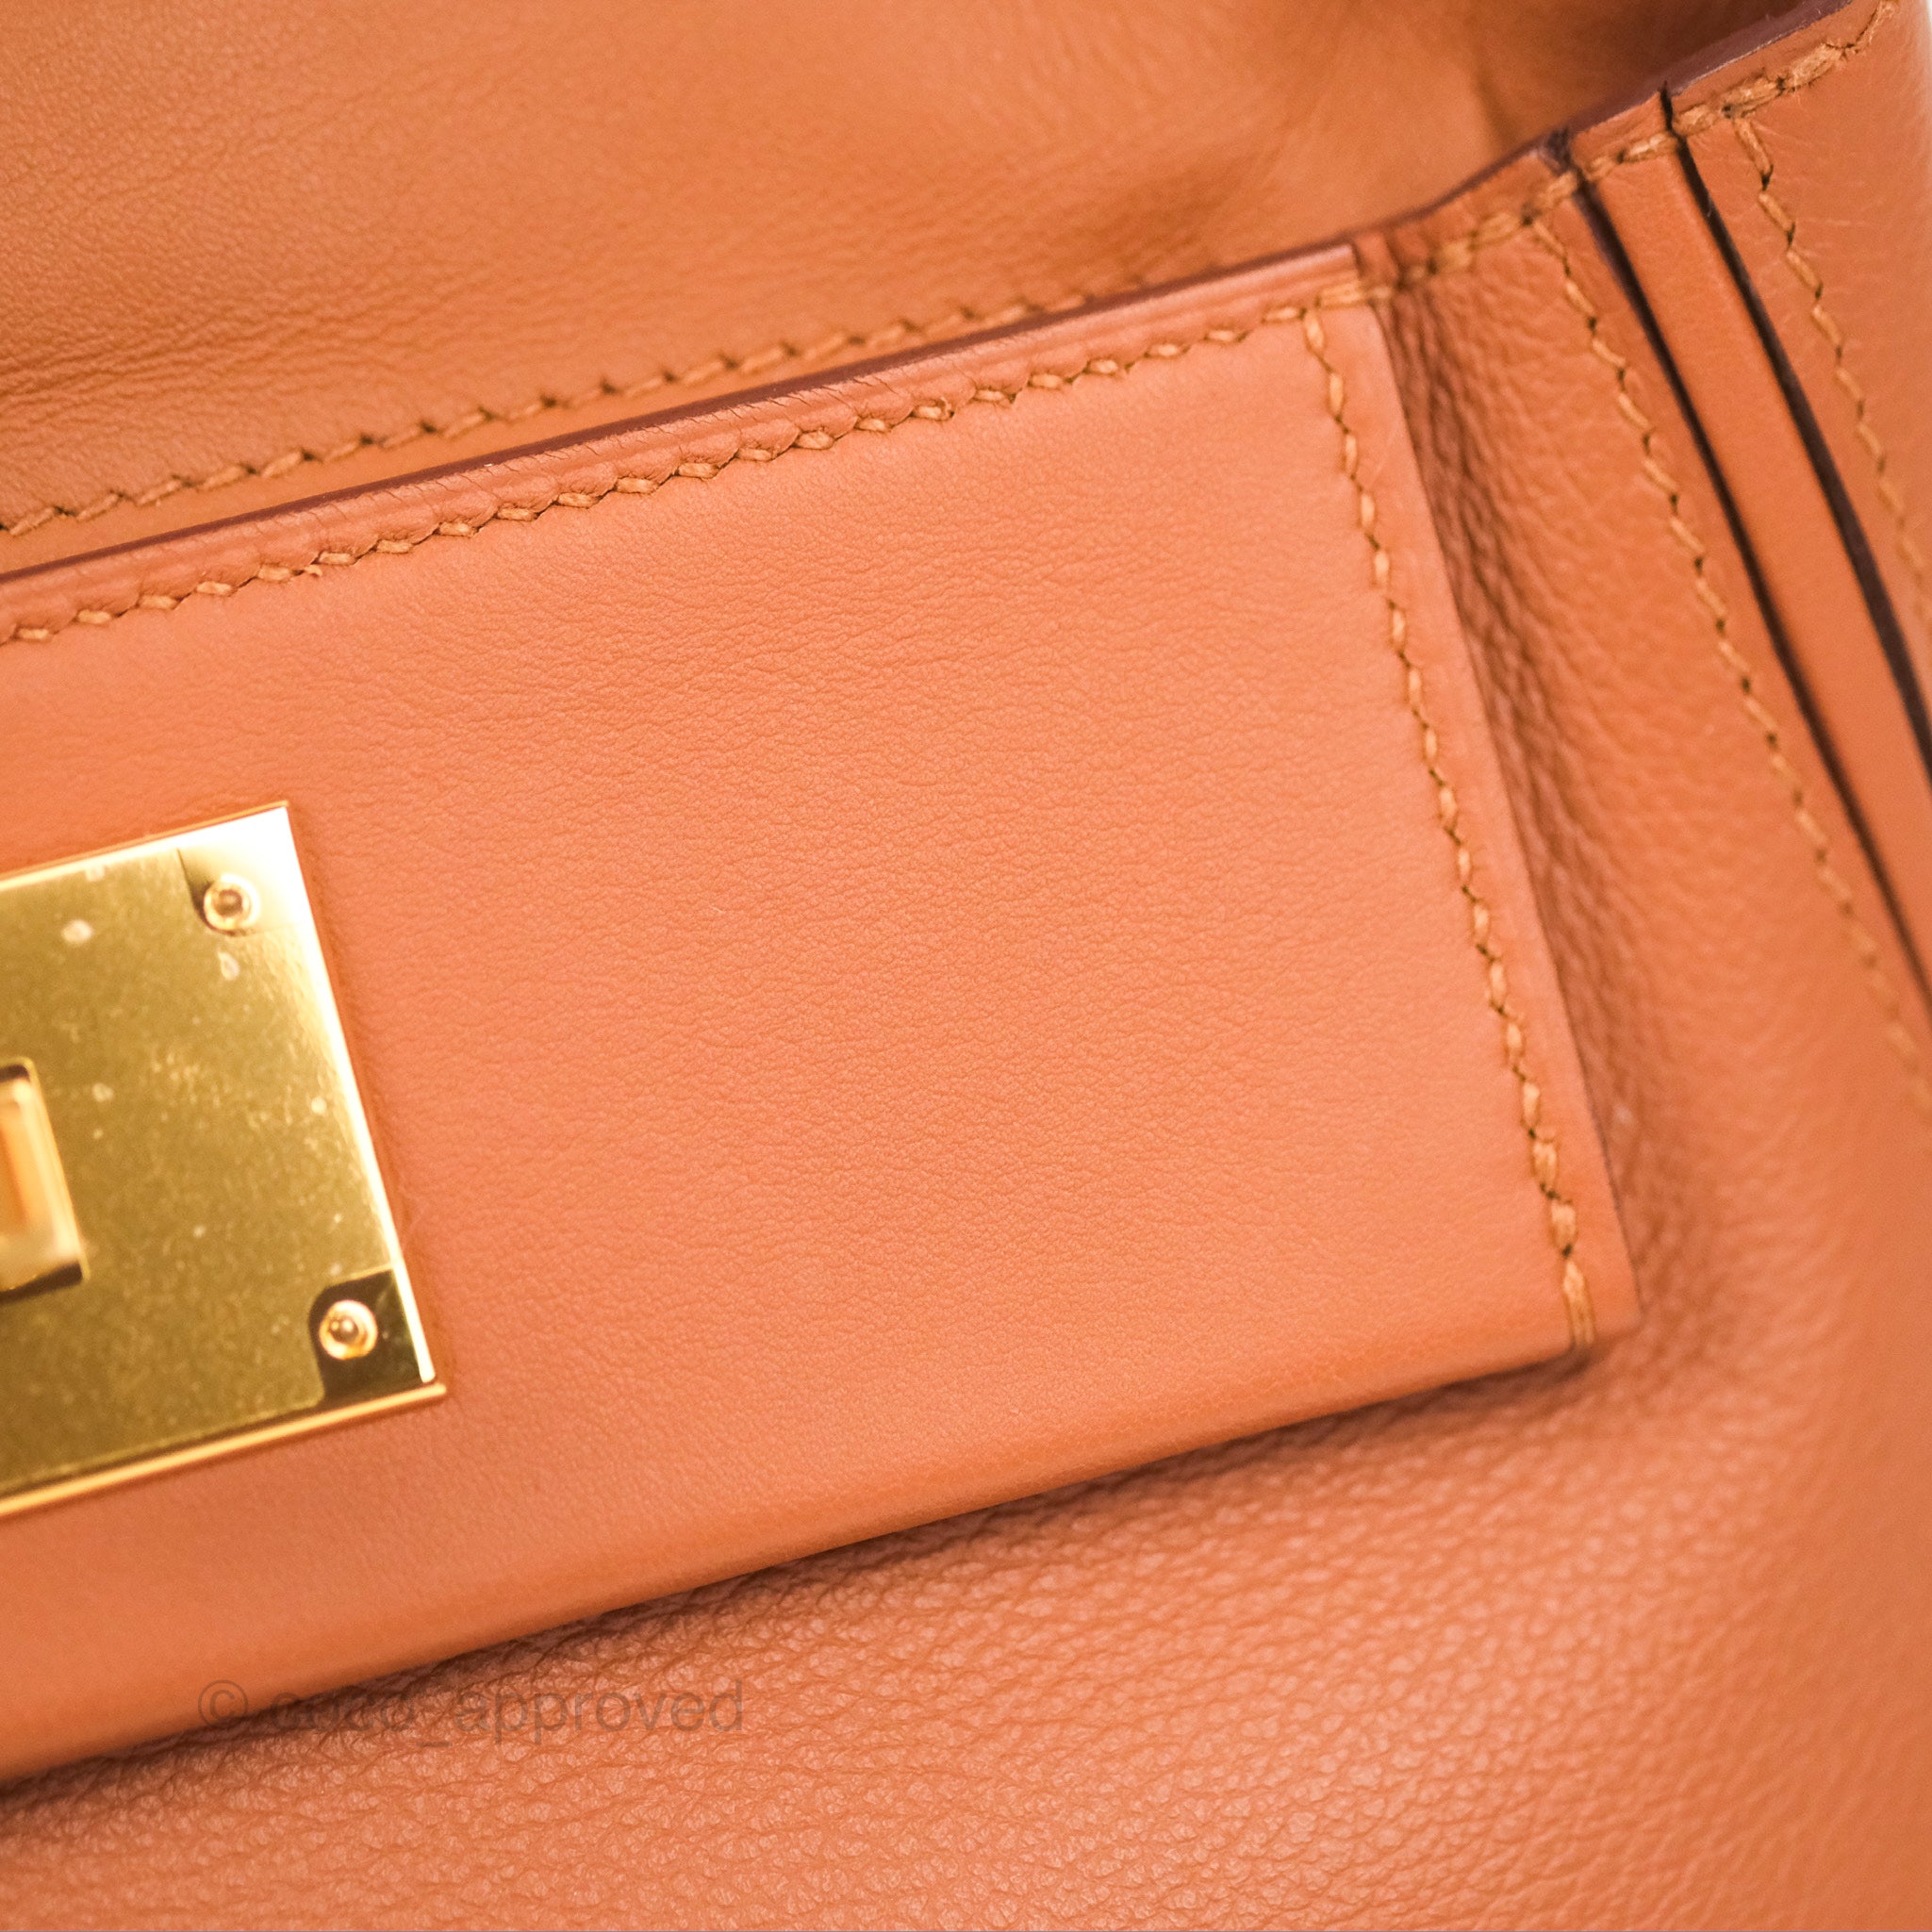 Hermès Mini Gold Clémence and Swift 24/24 Bag 21cm